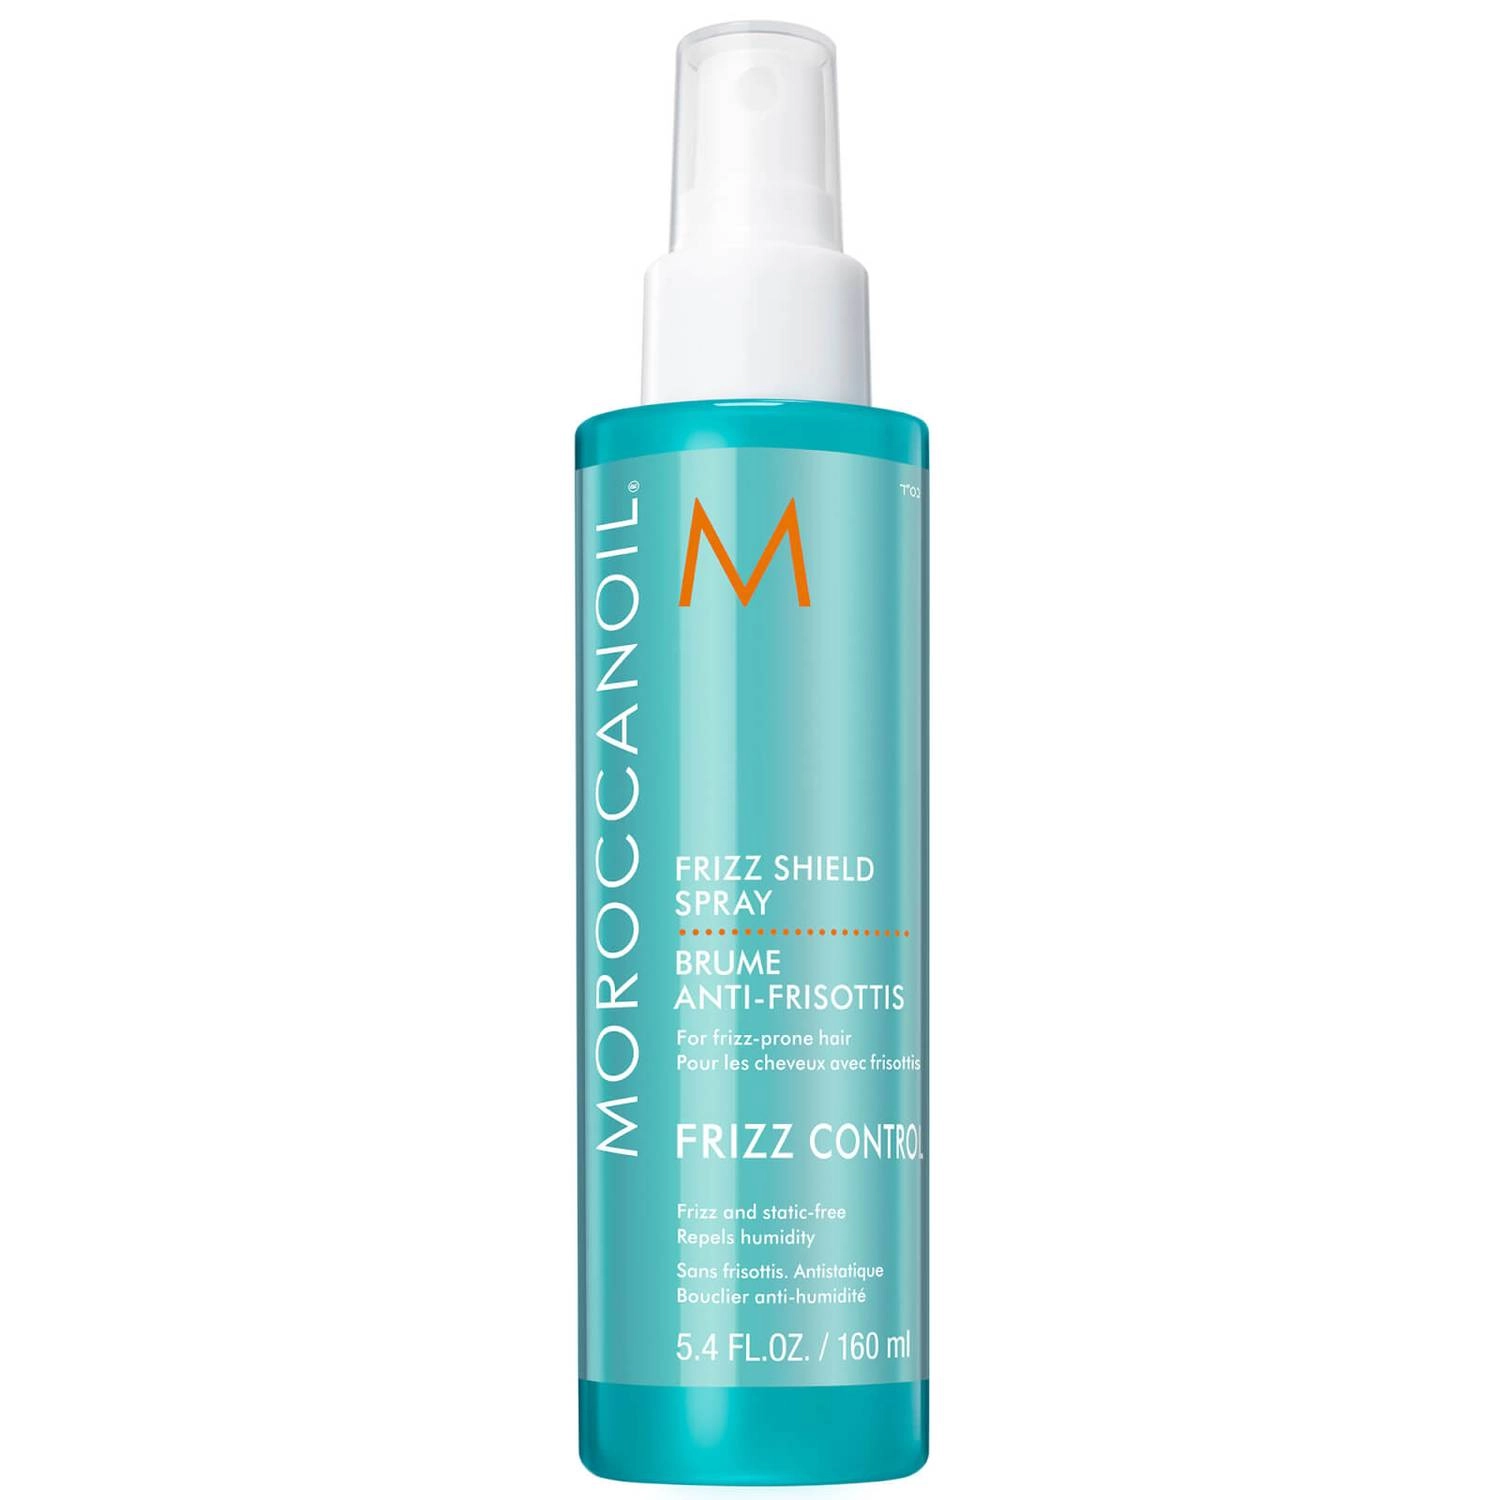 Спрей-стайлинг для волос - Moroccanoil Frizz Shield Spray, 160 мл - фото N1